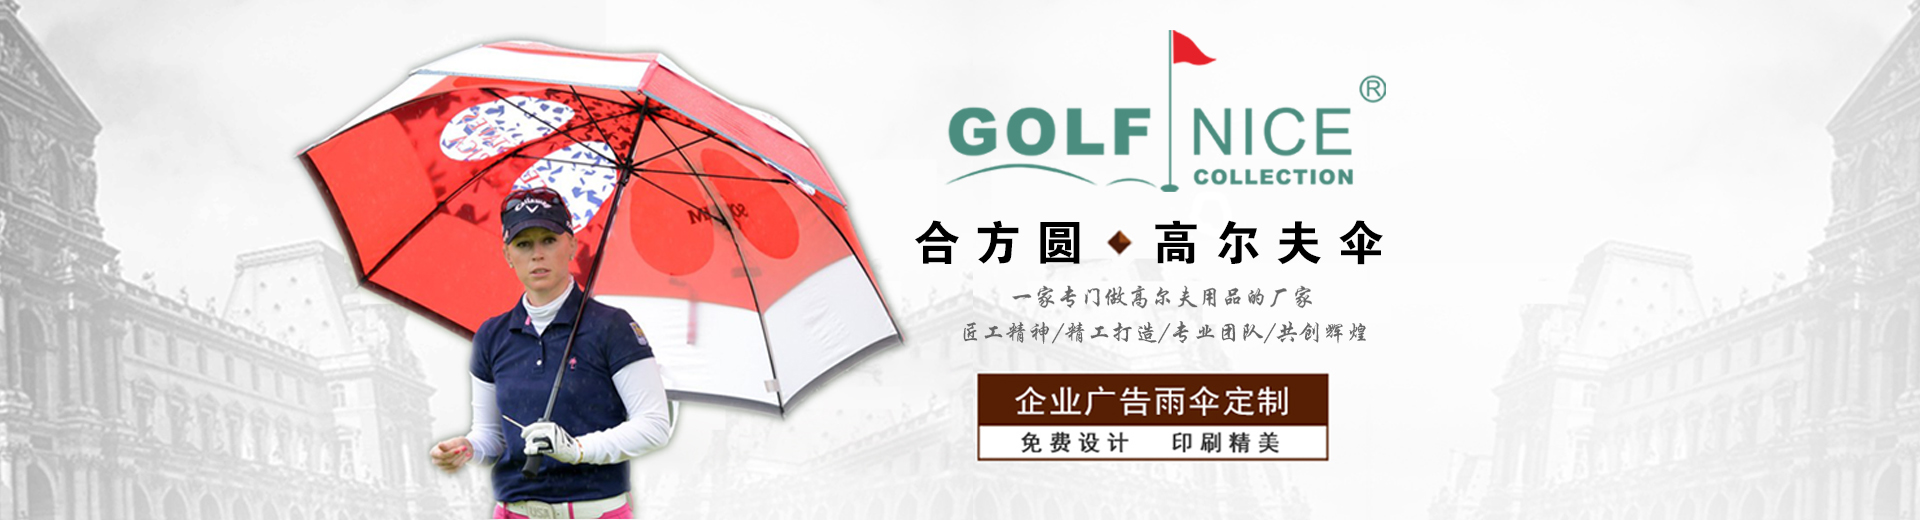 中國專業高爾夫用品定制商